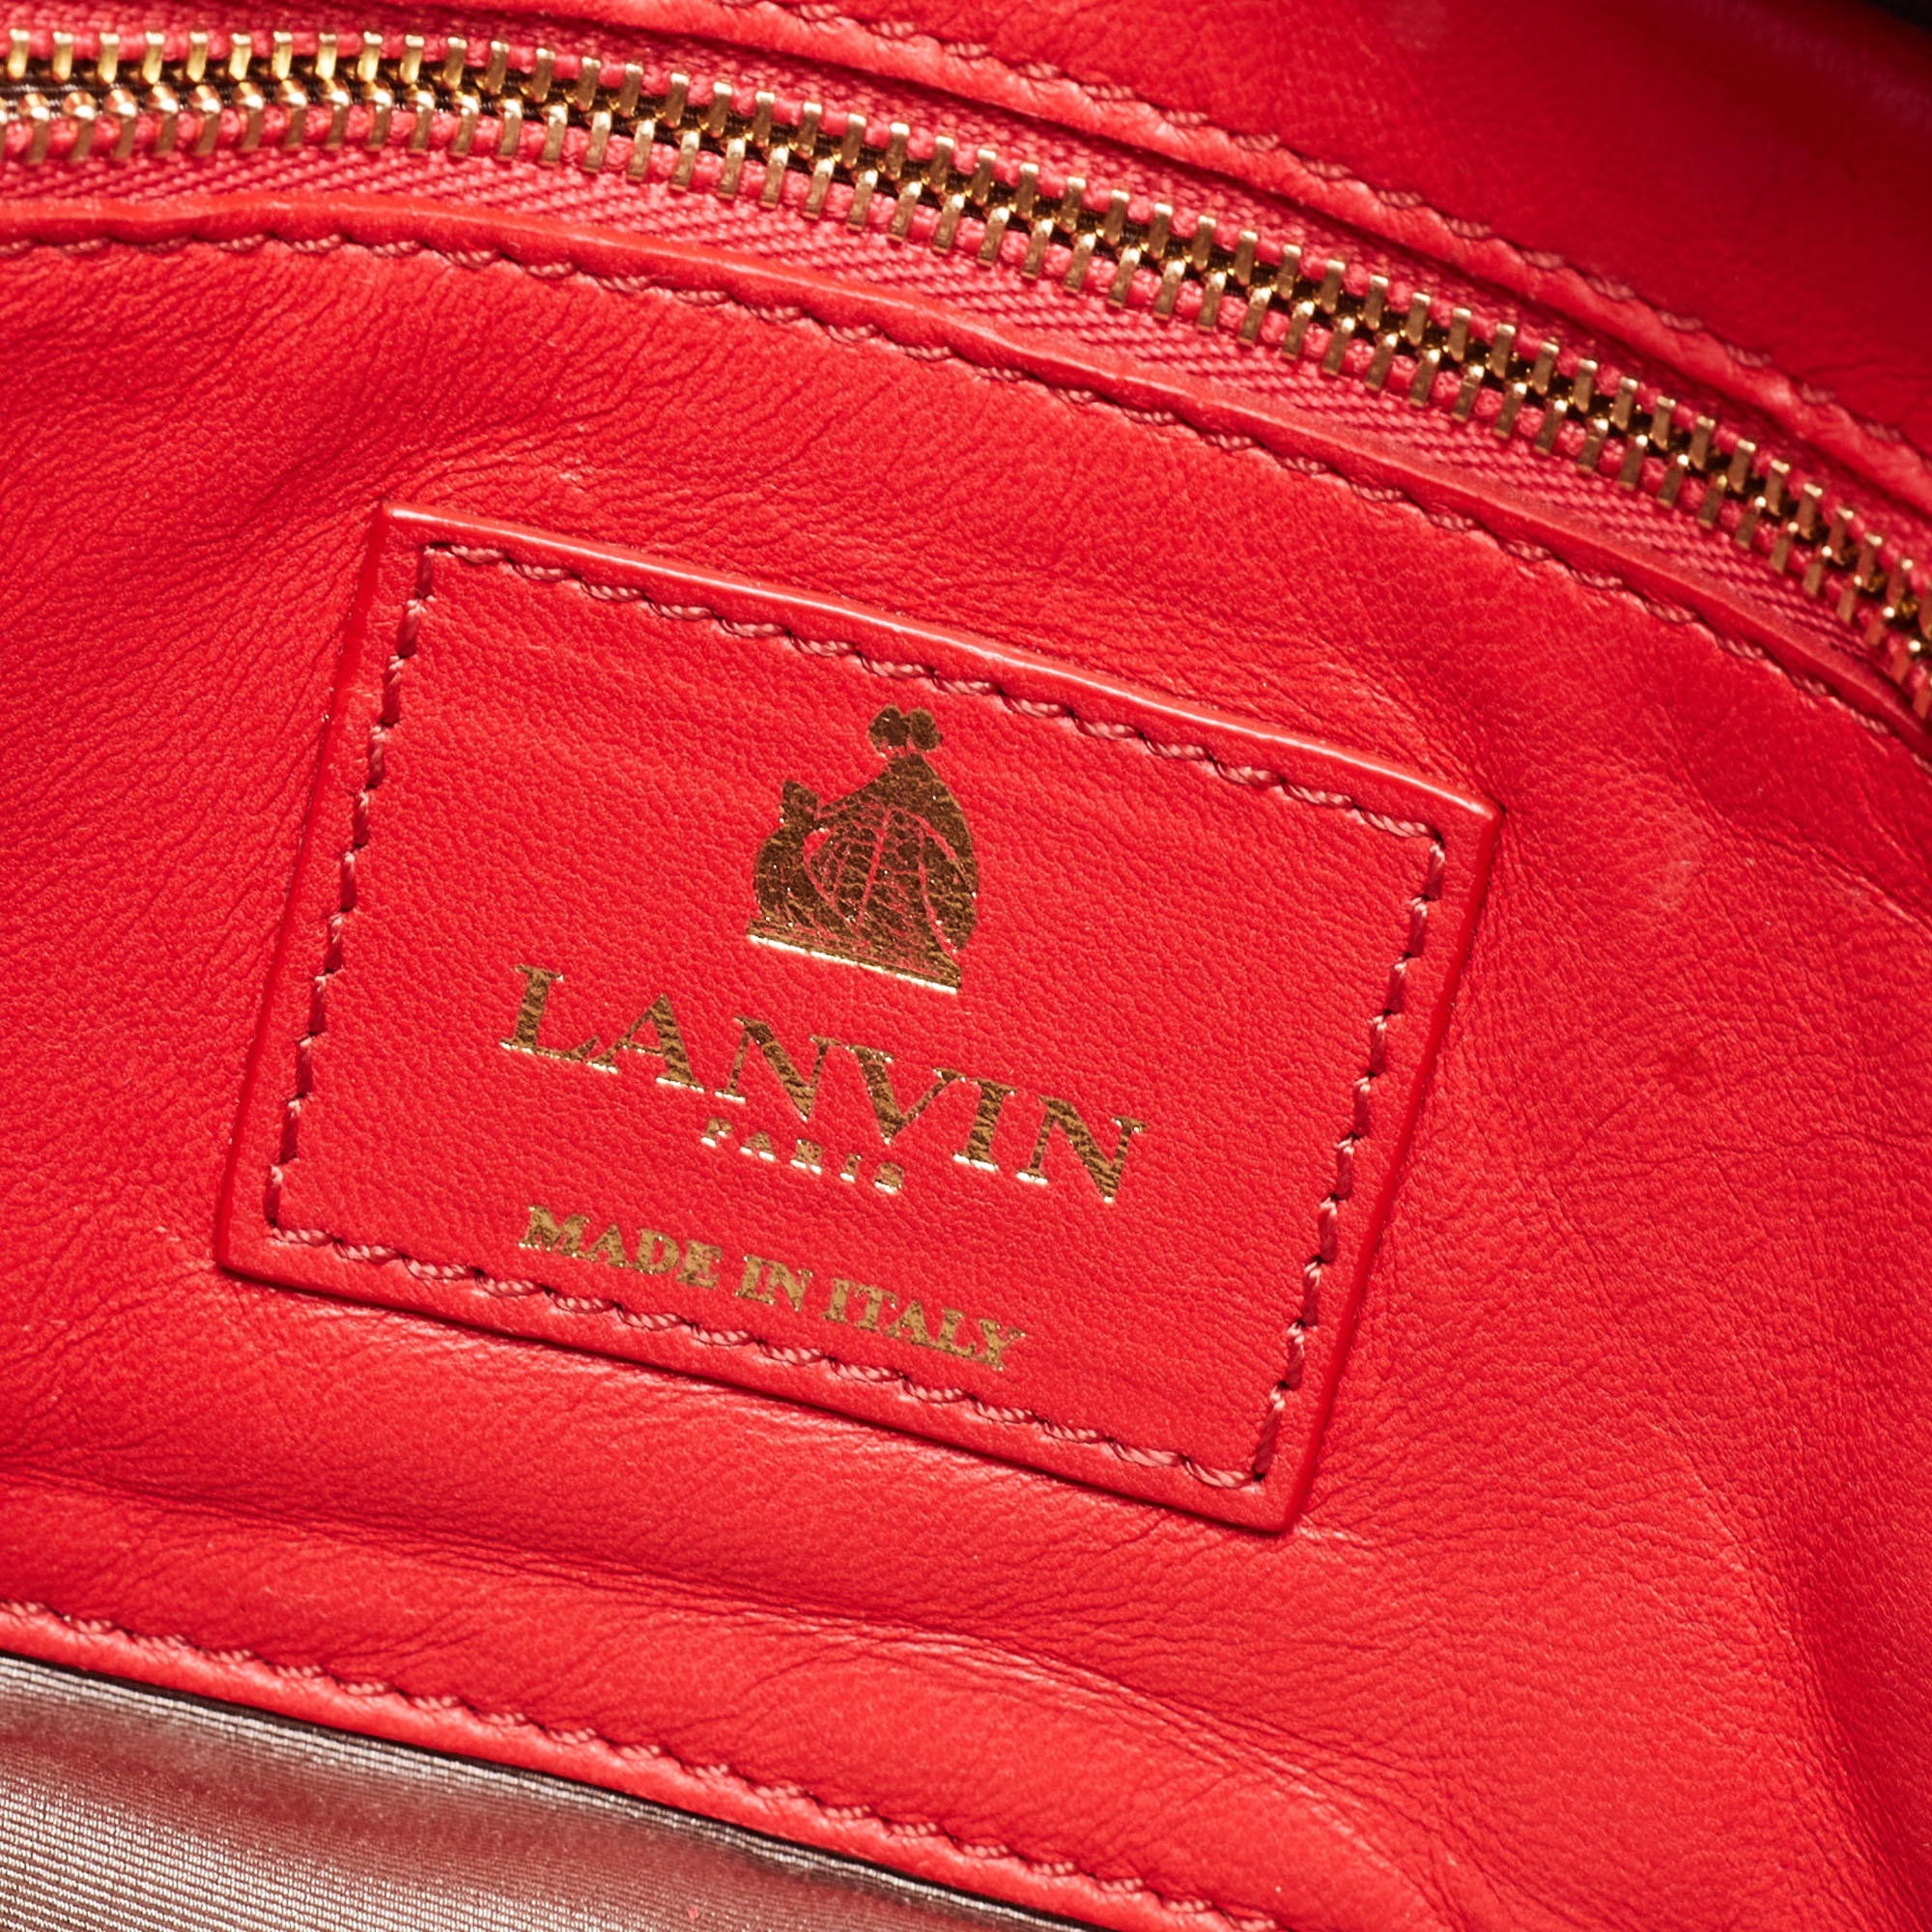 Lanvin Coral Red Leather Sugar Studded Shoulder Bag